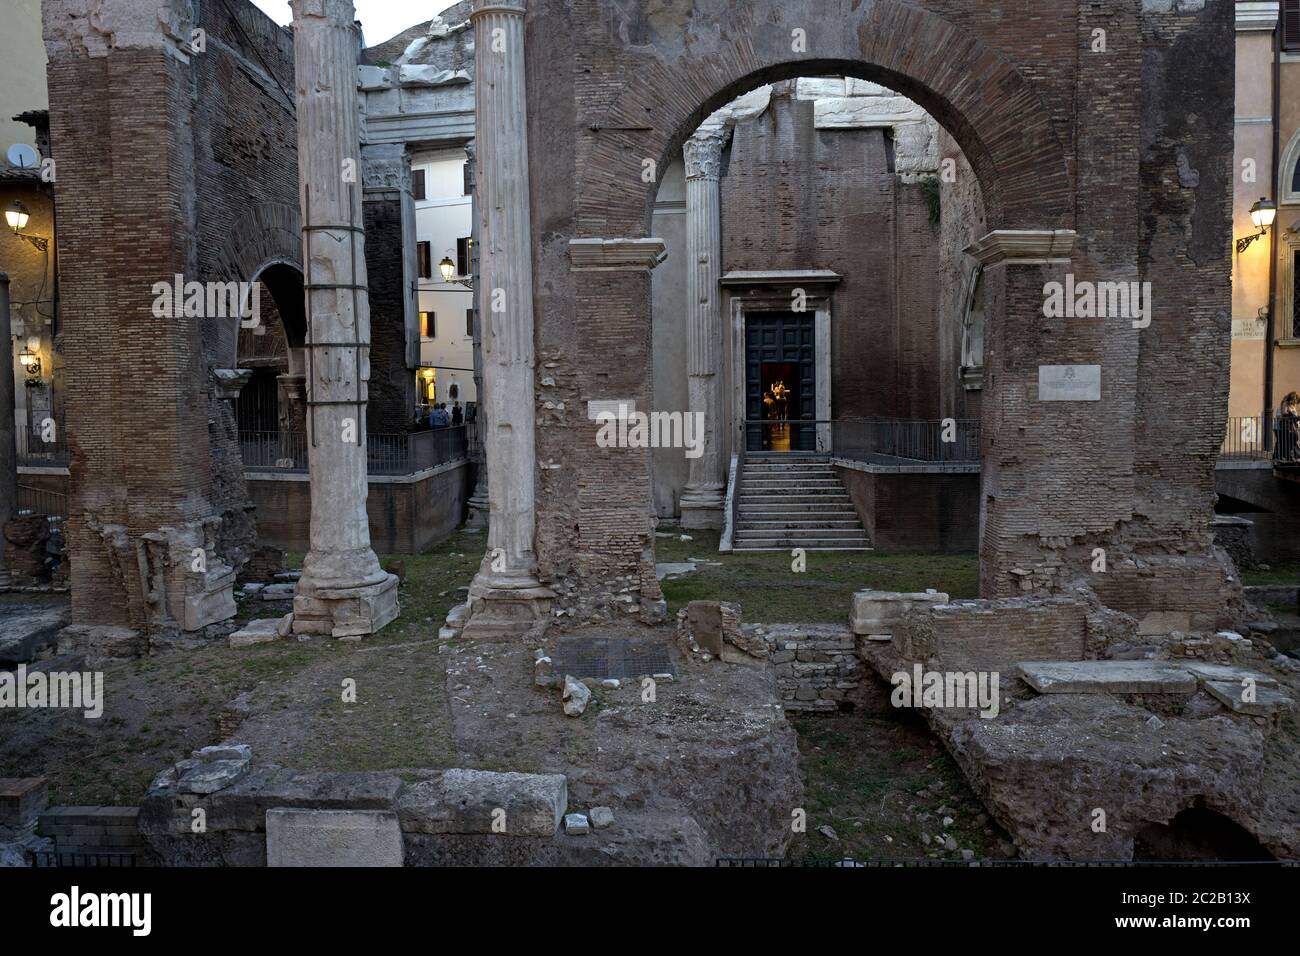 Roman Empire's ruins on the historical Jewish ghetto, in Rome. Stock Photo